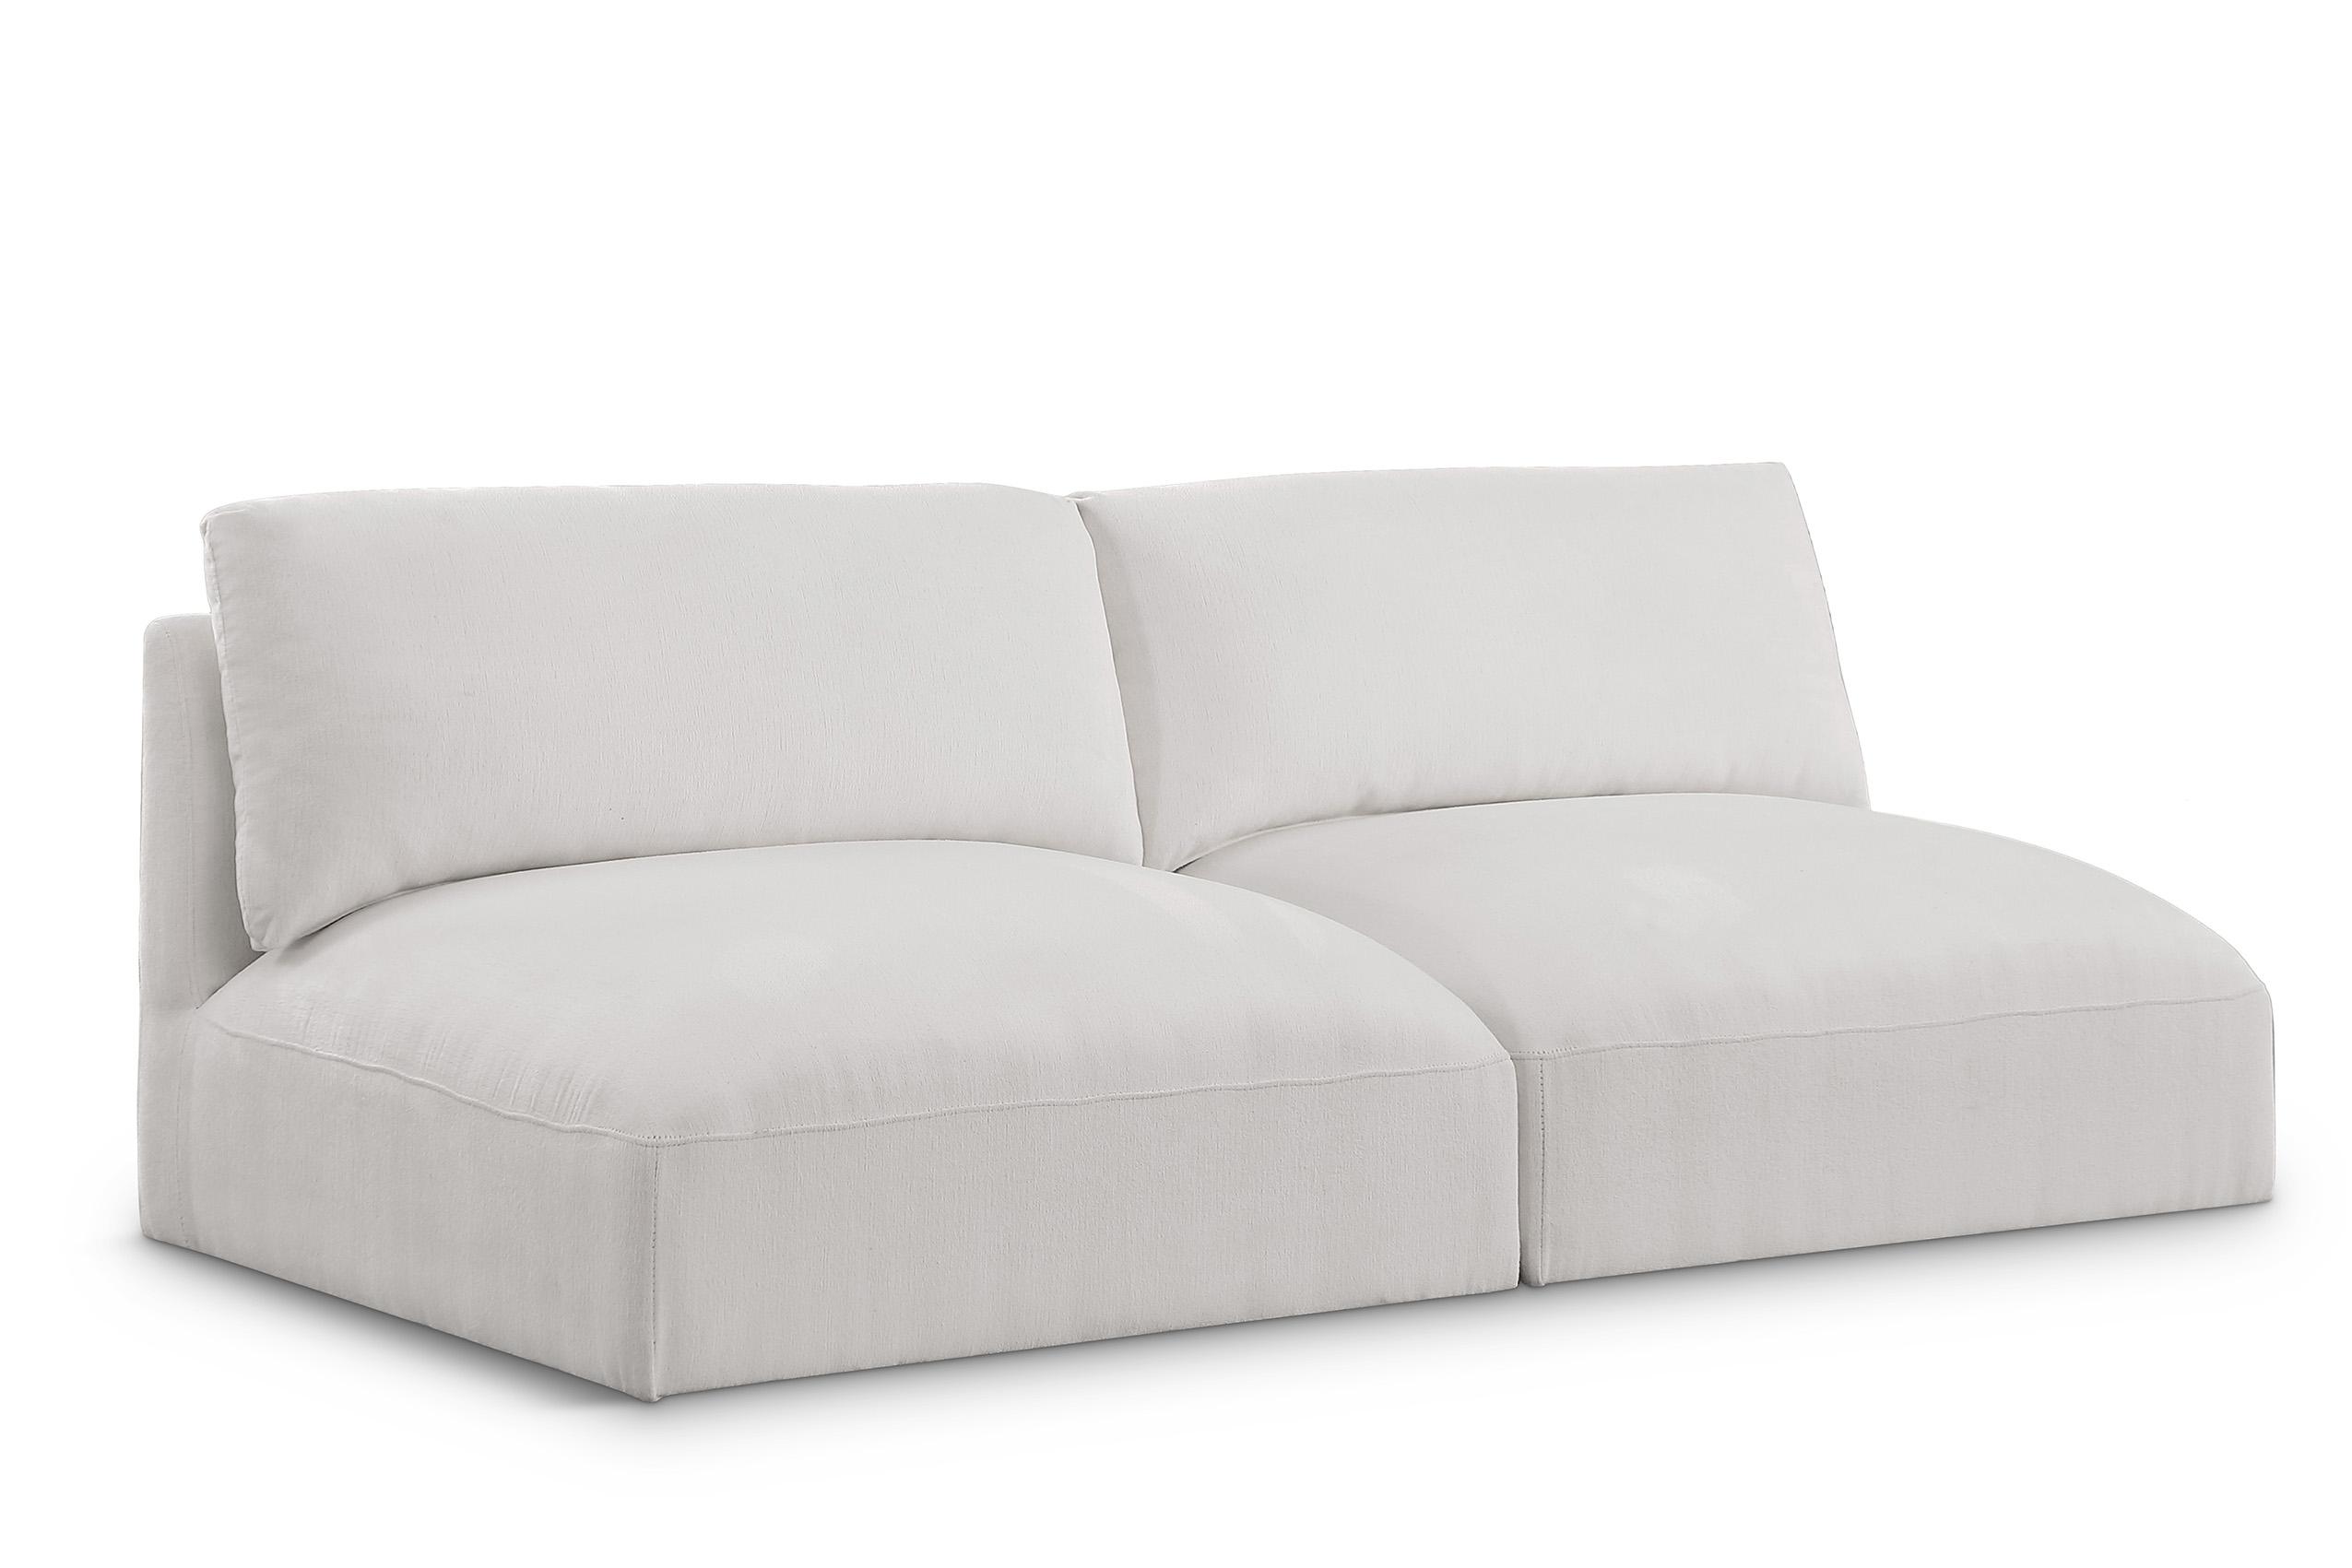 Contemporary, Modern Modular Sofa EASE 696Cream-S76A 696Cream-S76A in Cream Fabric